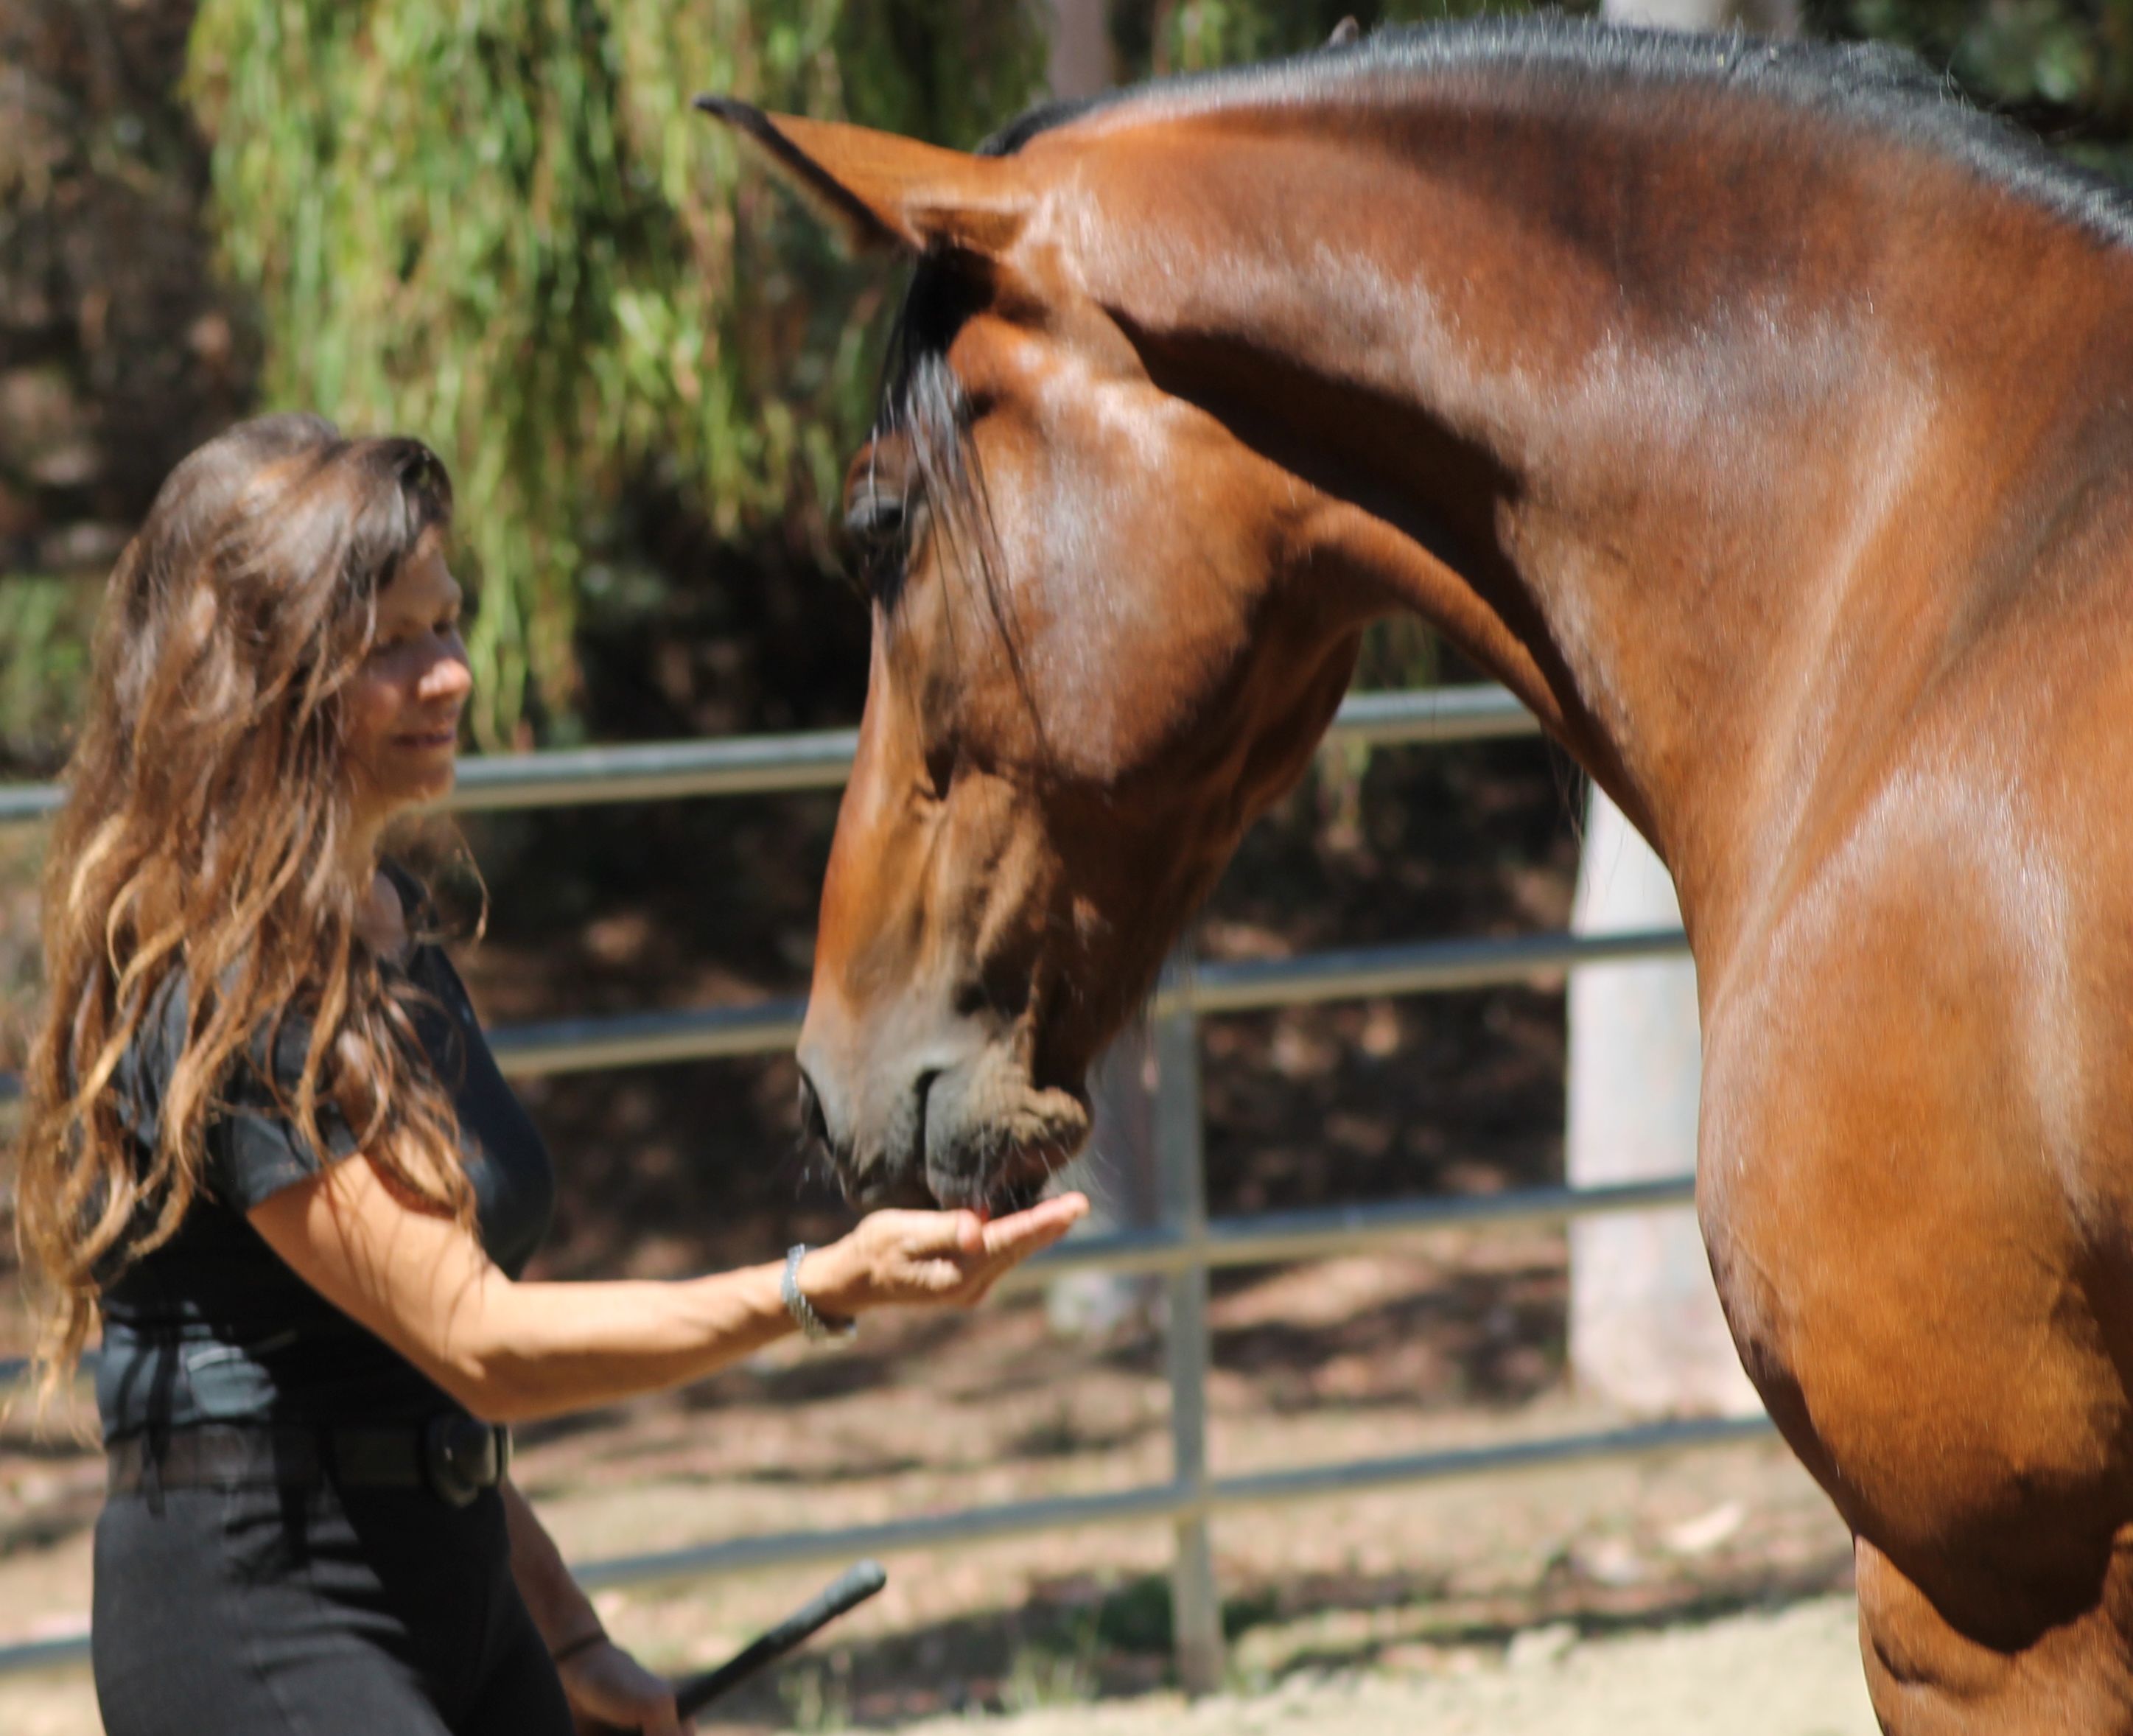 Интервьюученый елена молчанова — о том, как научить лошадей читать, а людей — уважать живых существ